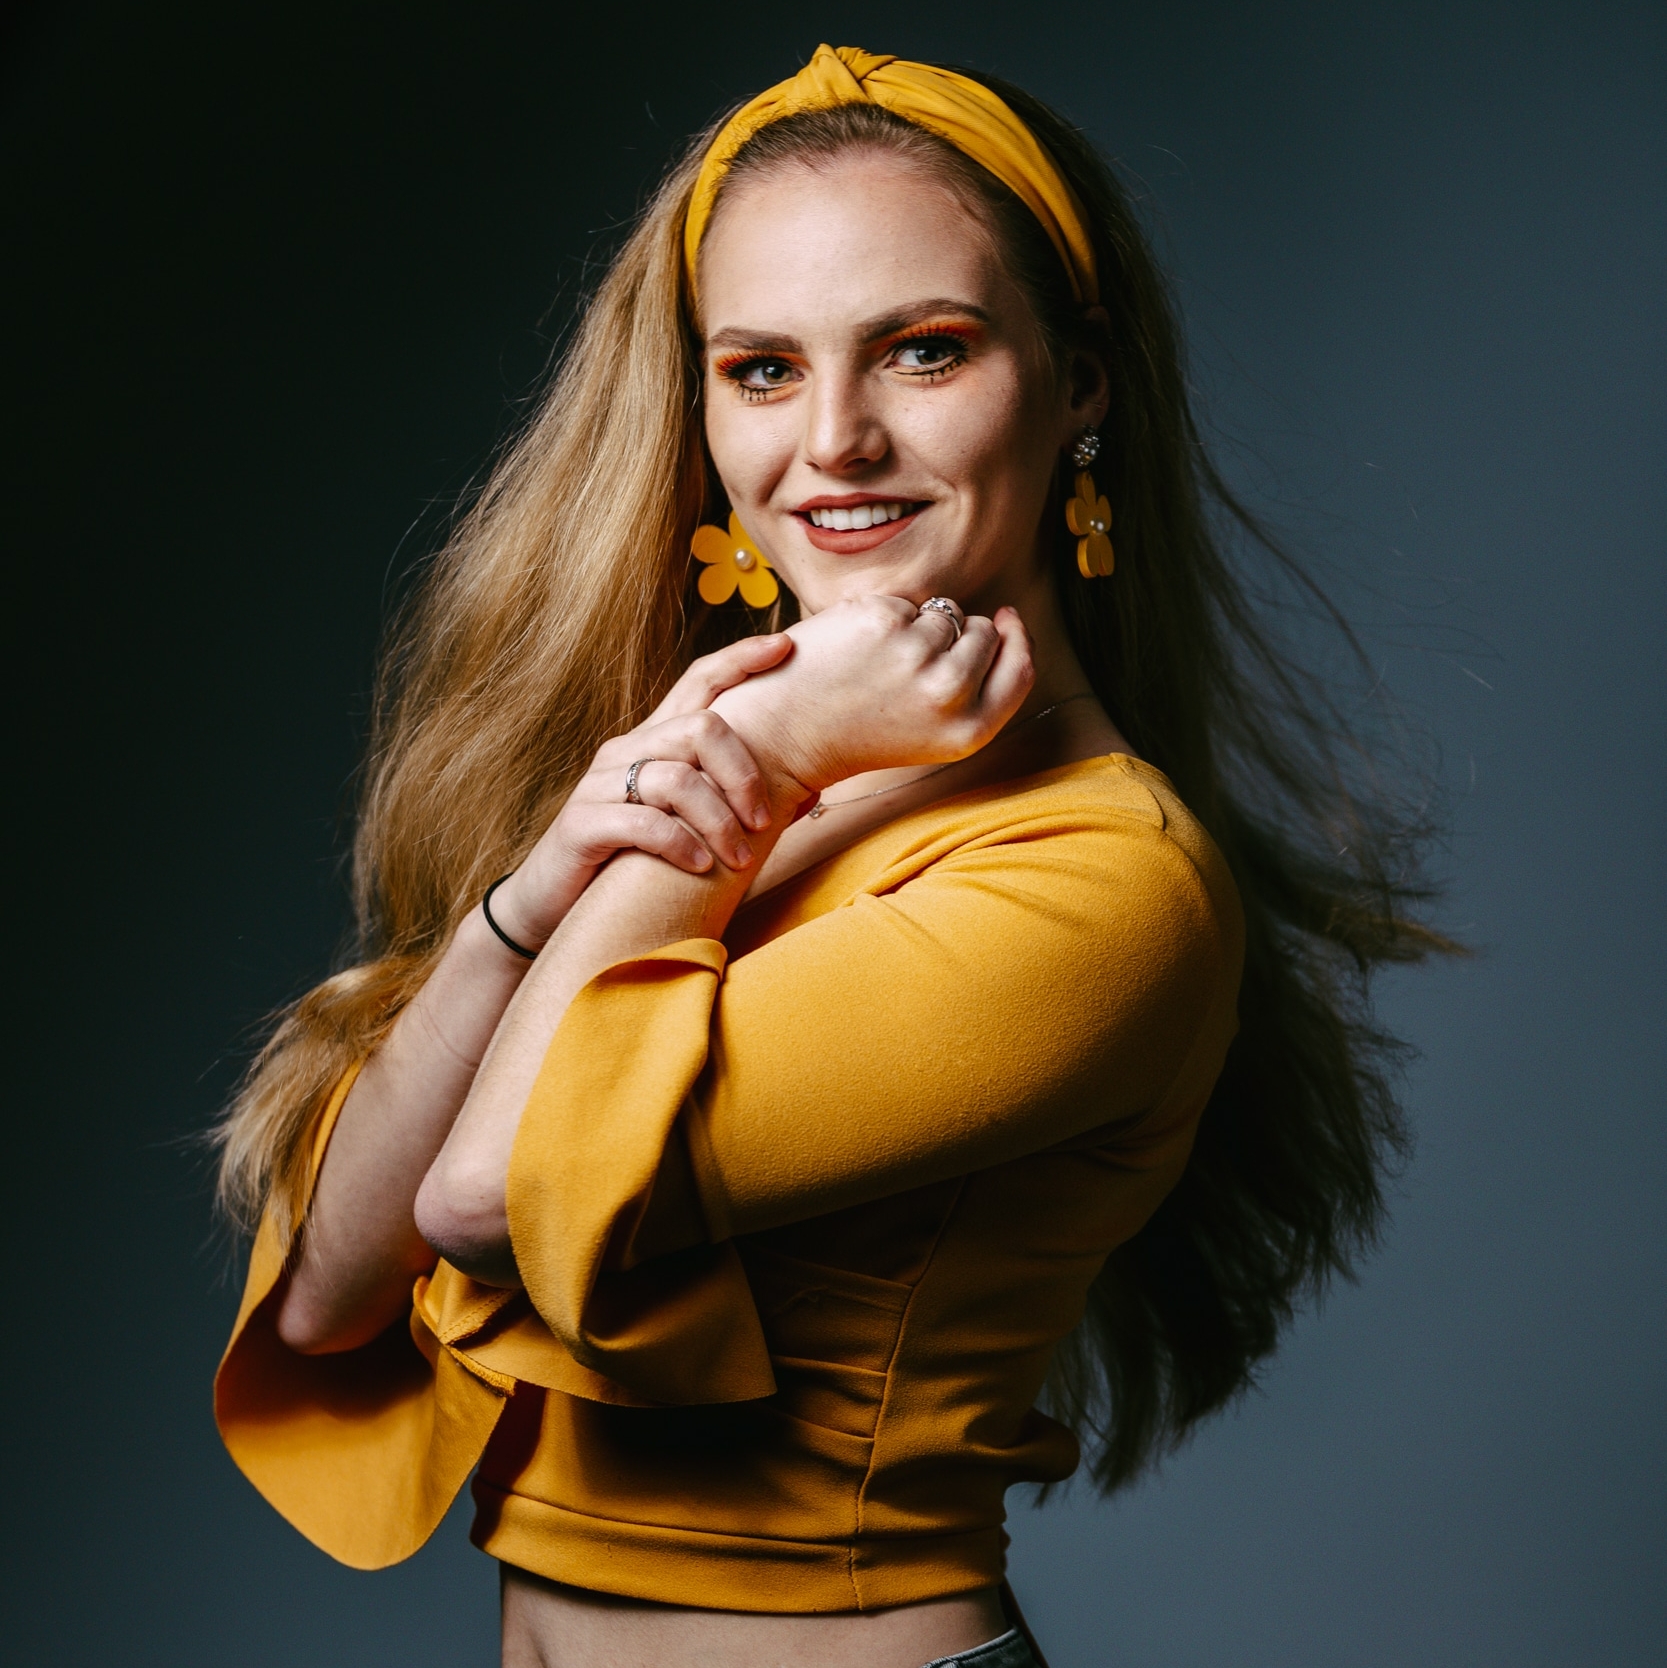 Een jonge professionele portretfotograaf die een vrouw in een levendige gele top vastlegt voor een fotoshoot.